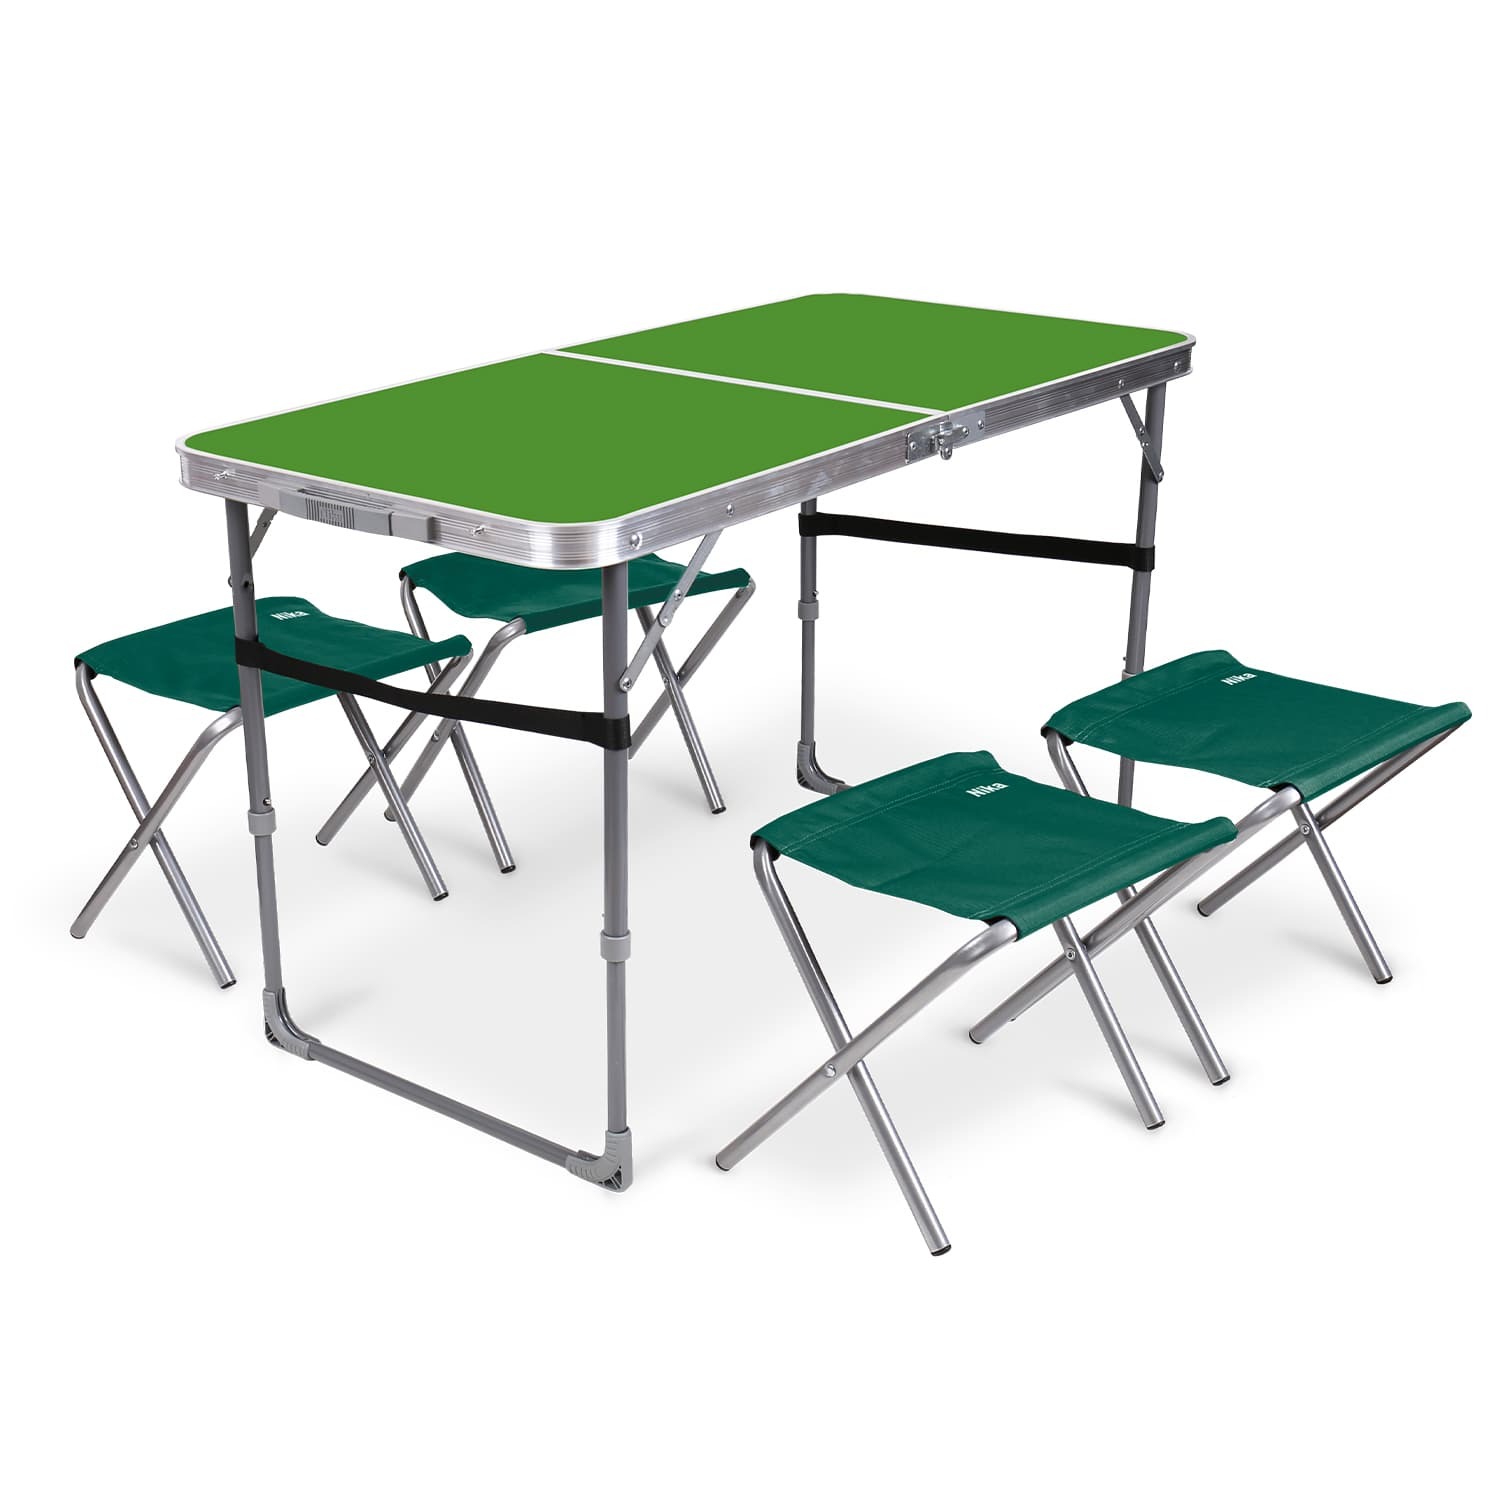 Комплект складной мебели Ника зеленый стол с изумрудными табуретами 5 предметов походный стол camping world